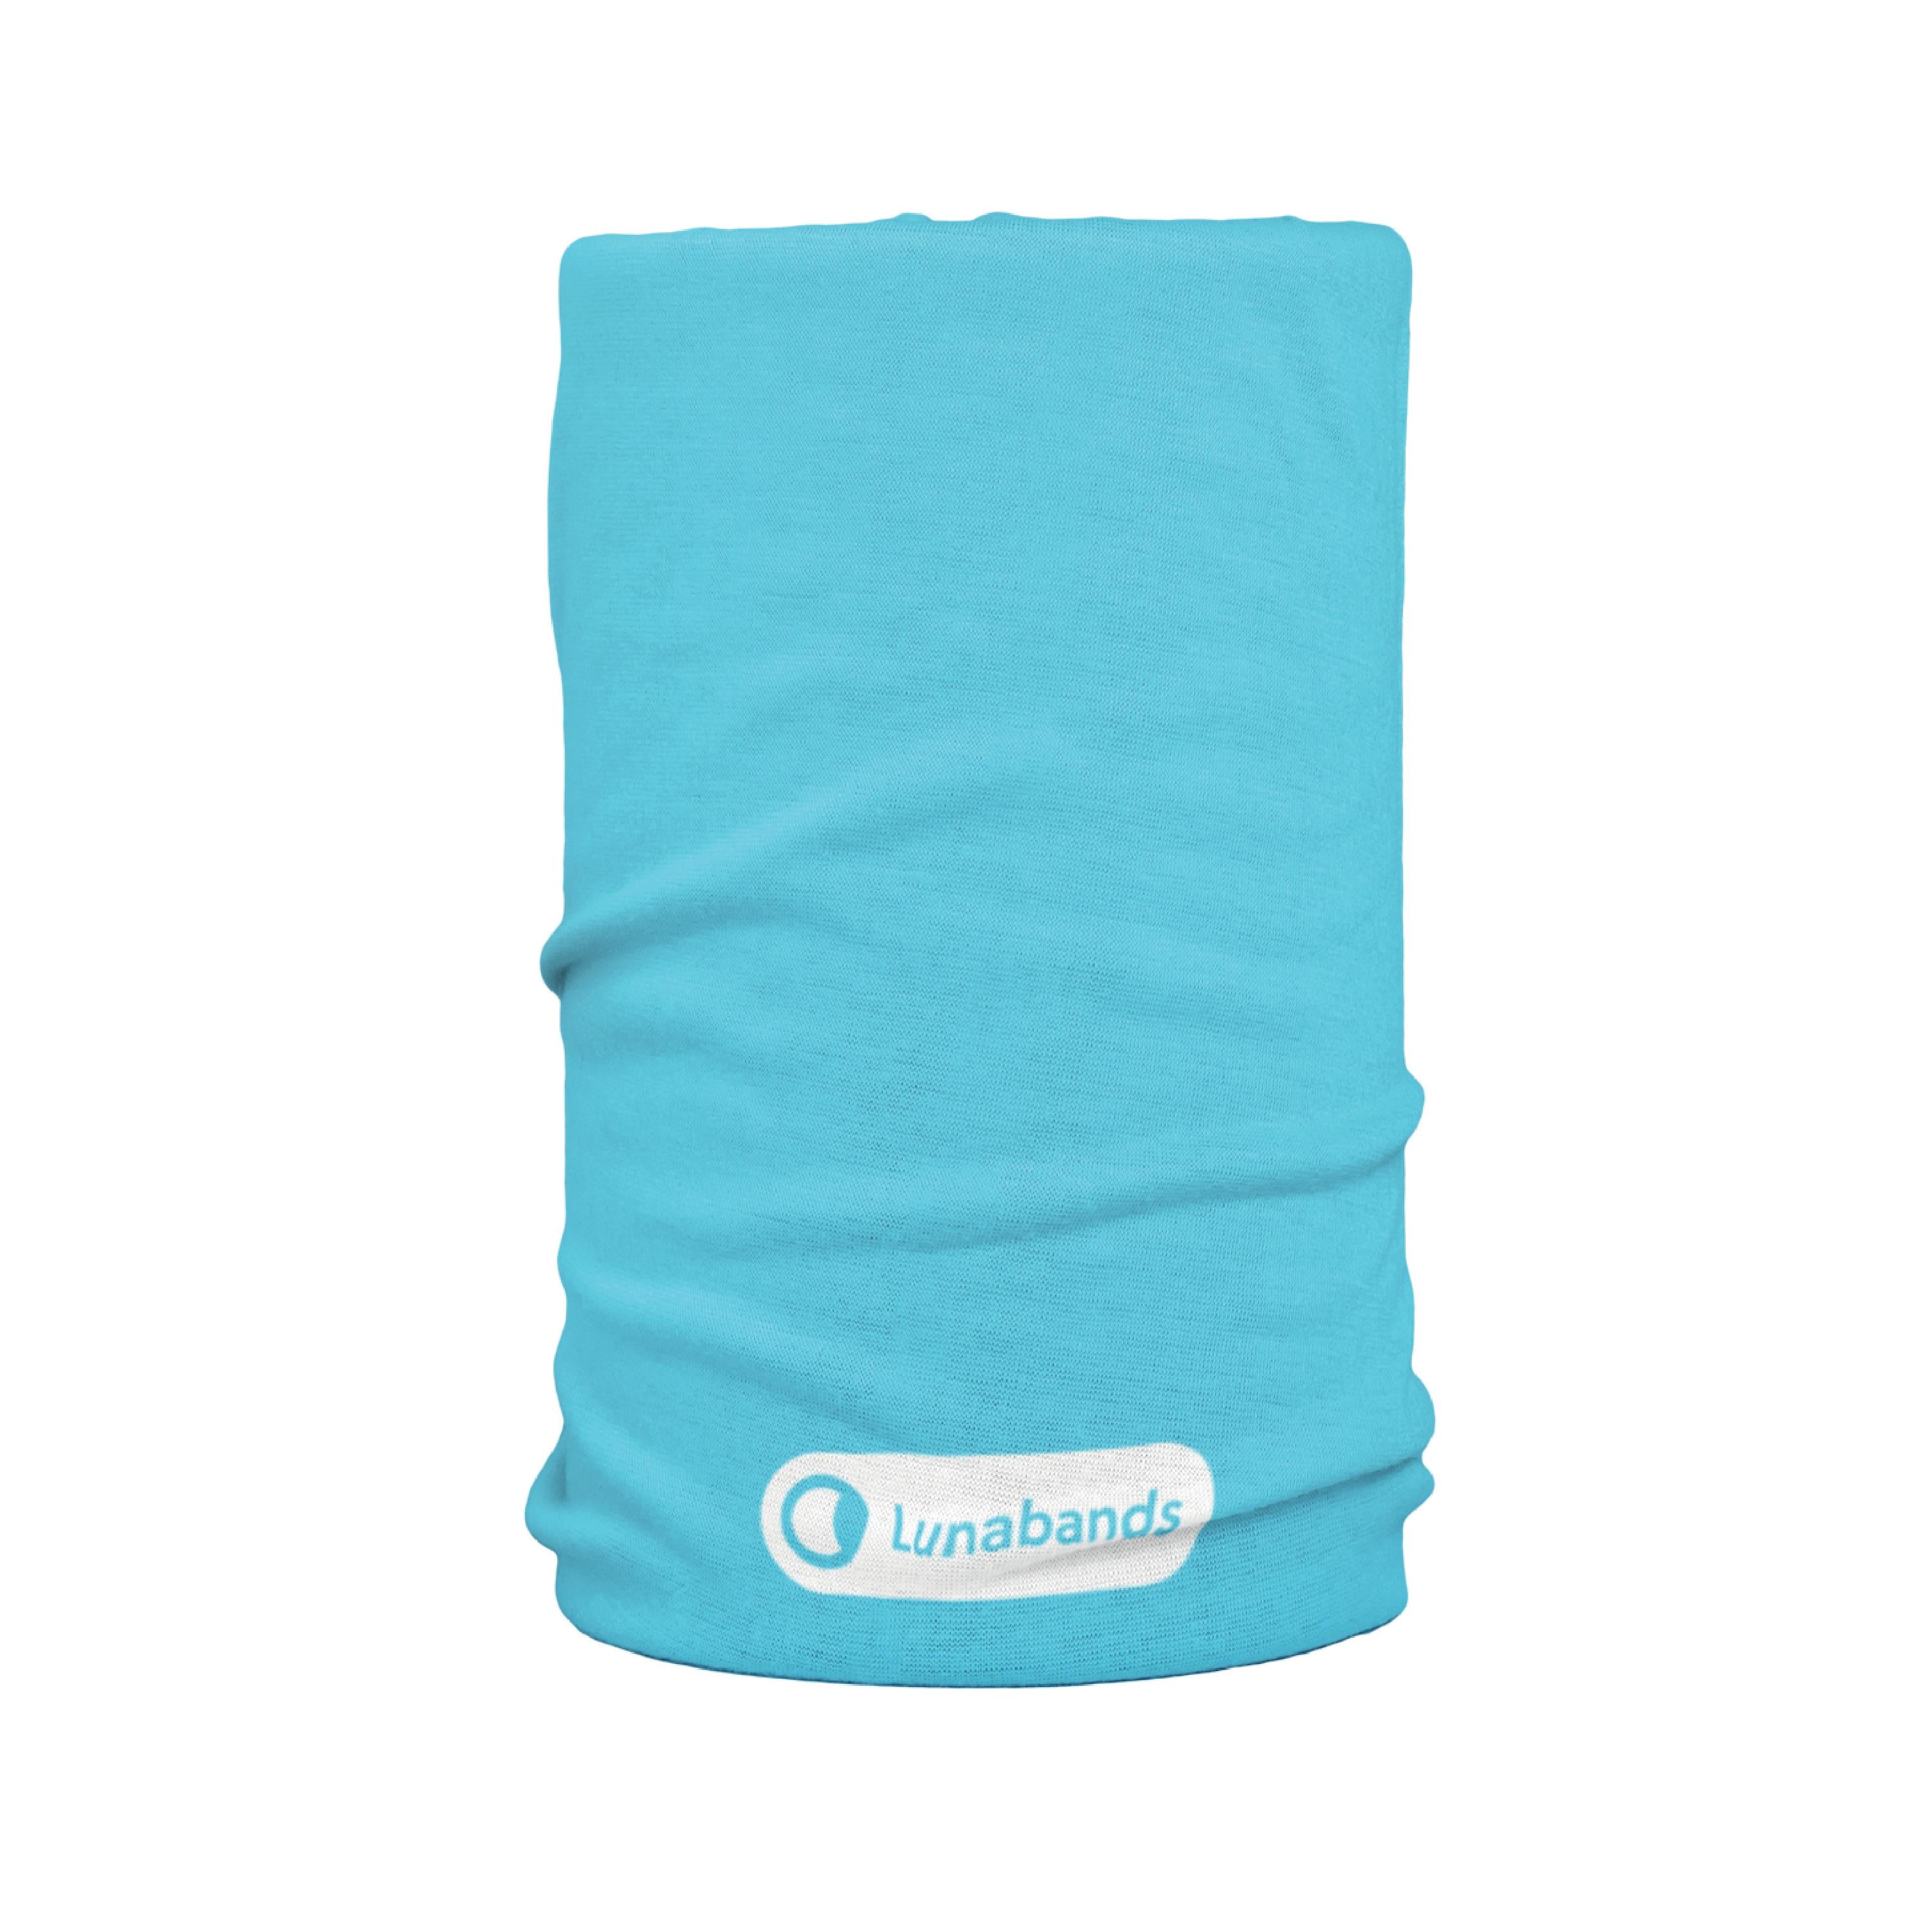 Lunabands Designer Turquoise Block Colour Multi Use Multifunctional Running Sports Yoga Gym Bandana Headband Headbands